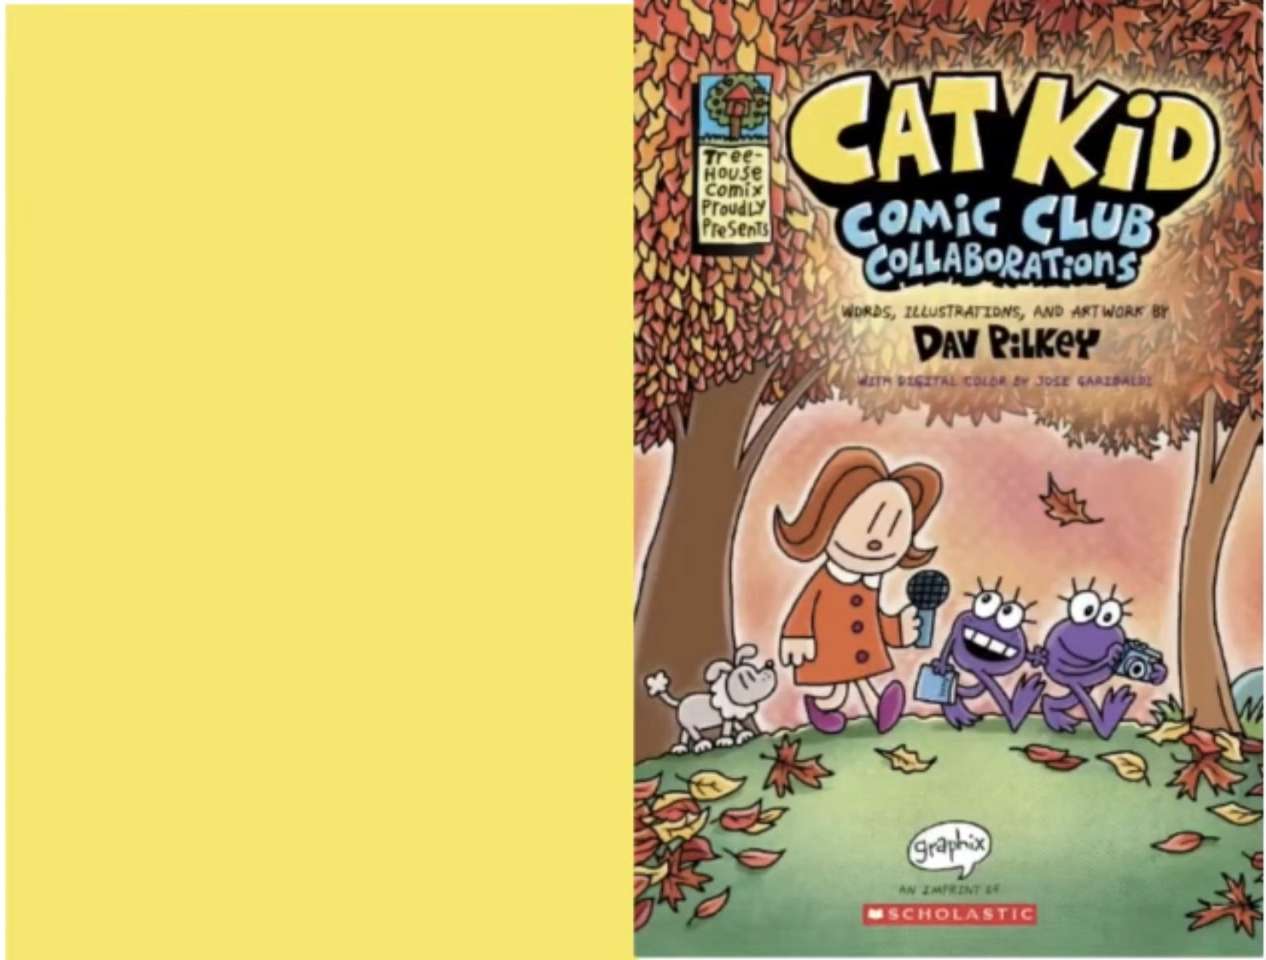 Współpraca klubu komiksowego Cat Kid puzzle online